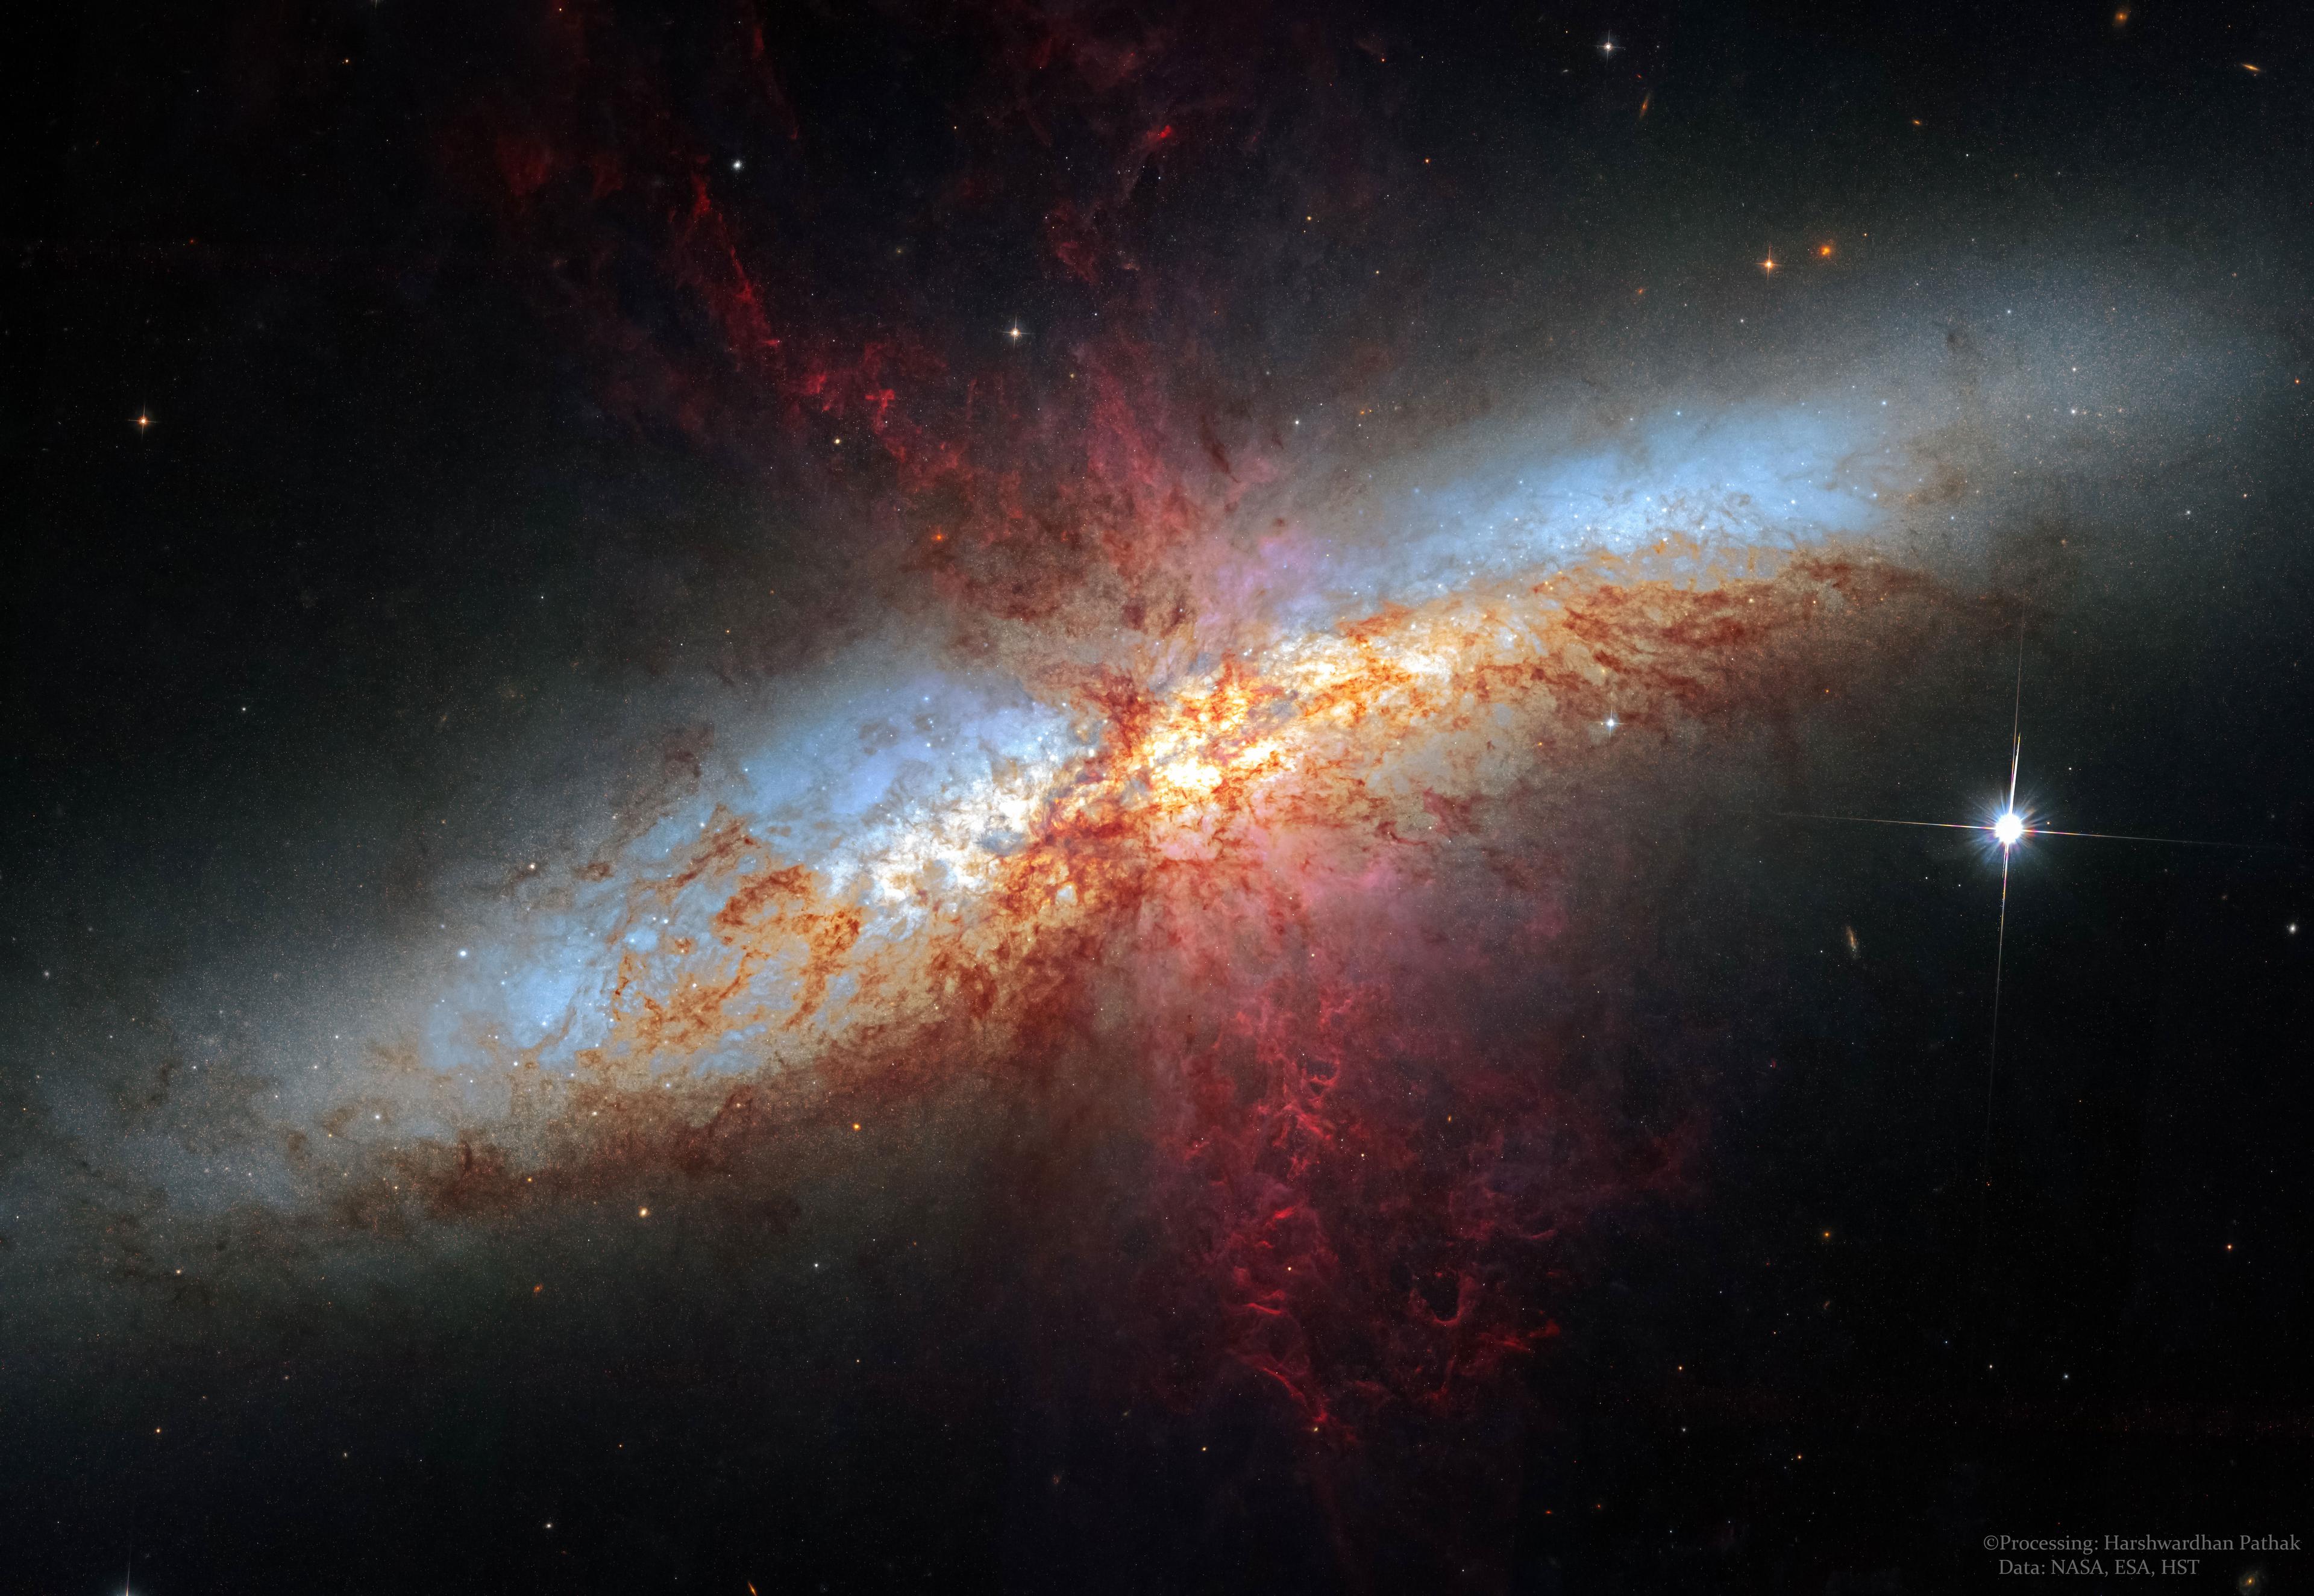 تظهر المجرّة الحلزونيّة مع الكثير من الخيوط الحمراء المُعقّدة مُمتدّة للخارج.